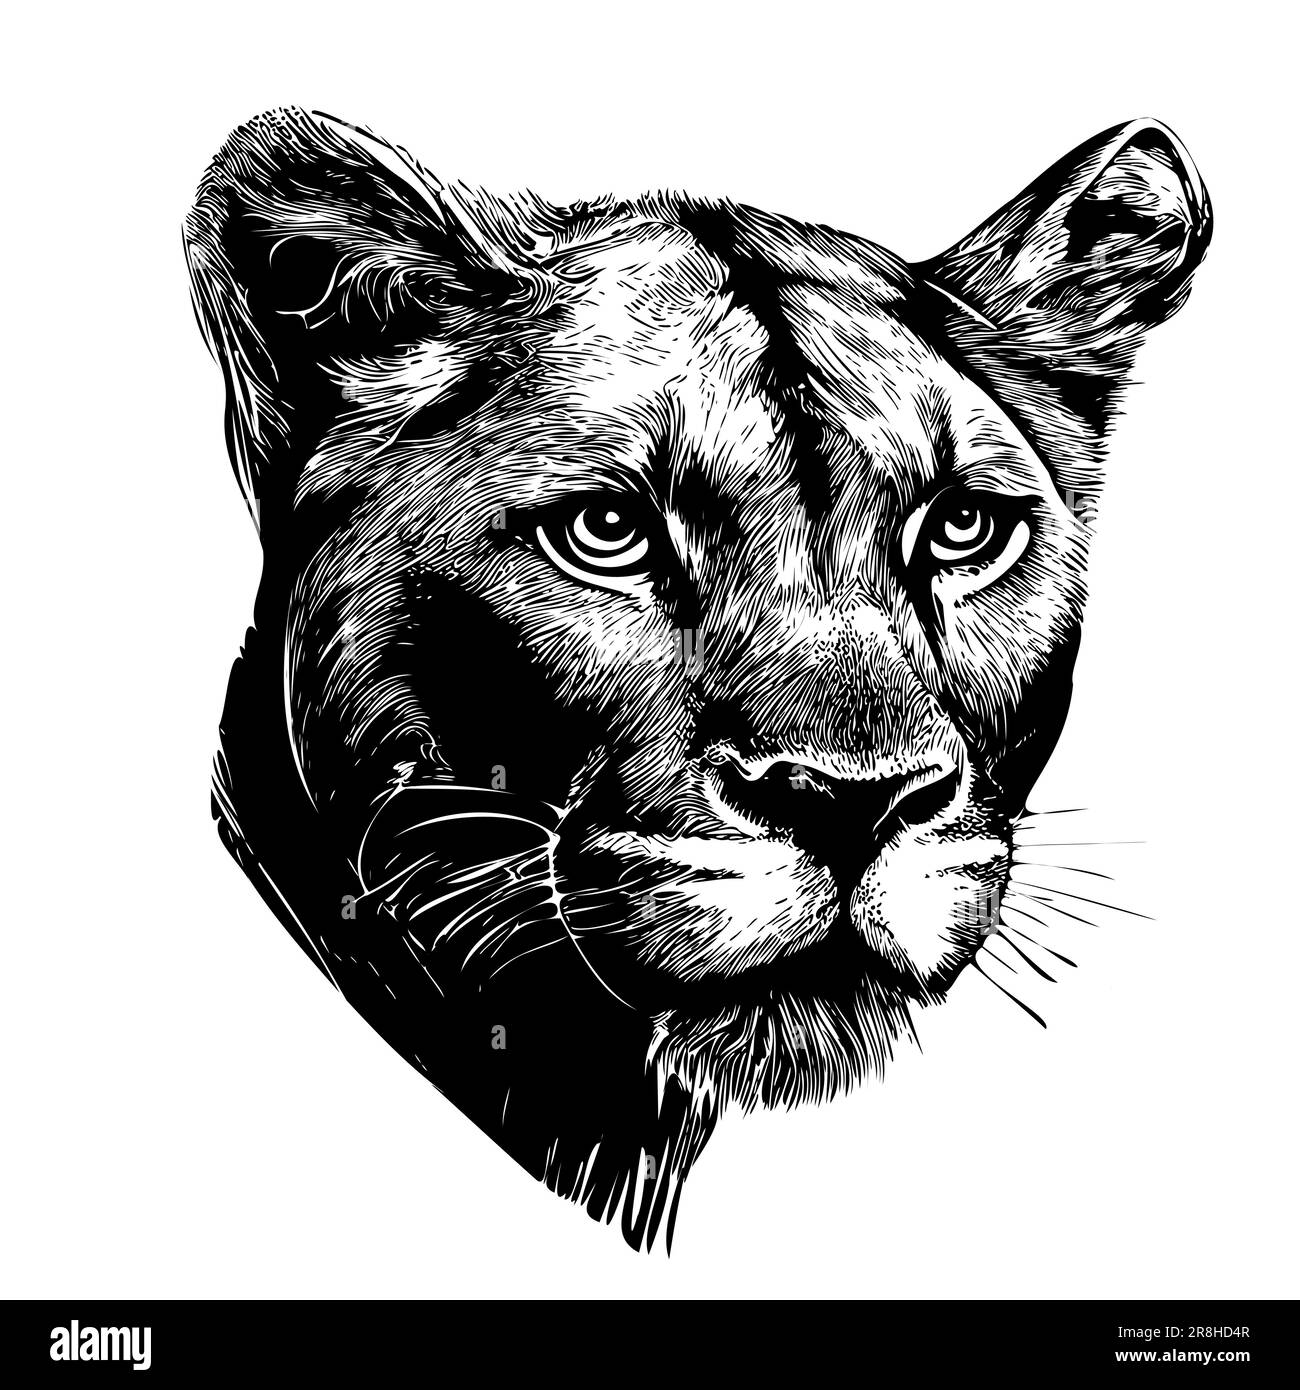 Disegno a mano della testa senza leoni Animali selvatici Illustrazione Vettoriale